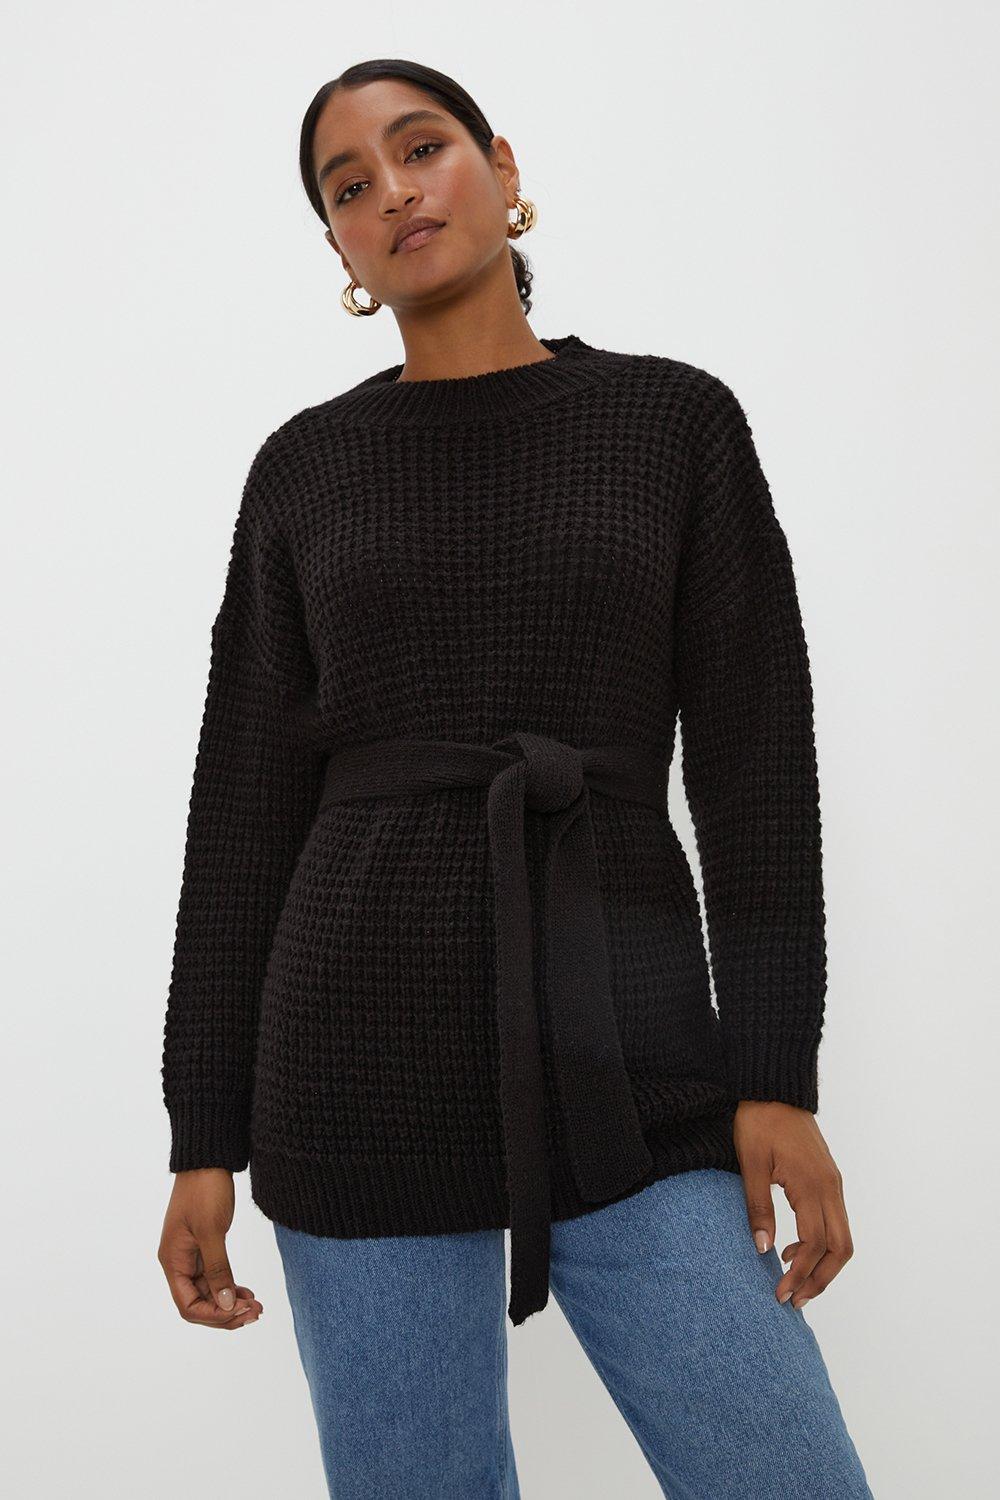 Women’s Belted Waffle Stitch Soft Knit Tunic - black - S